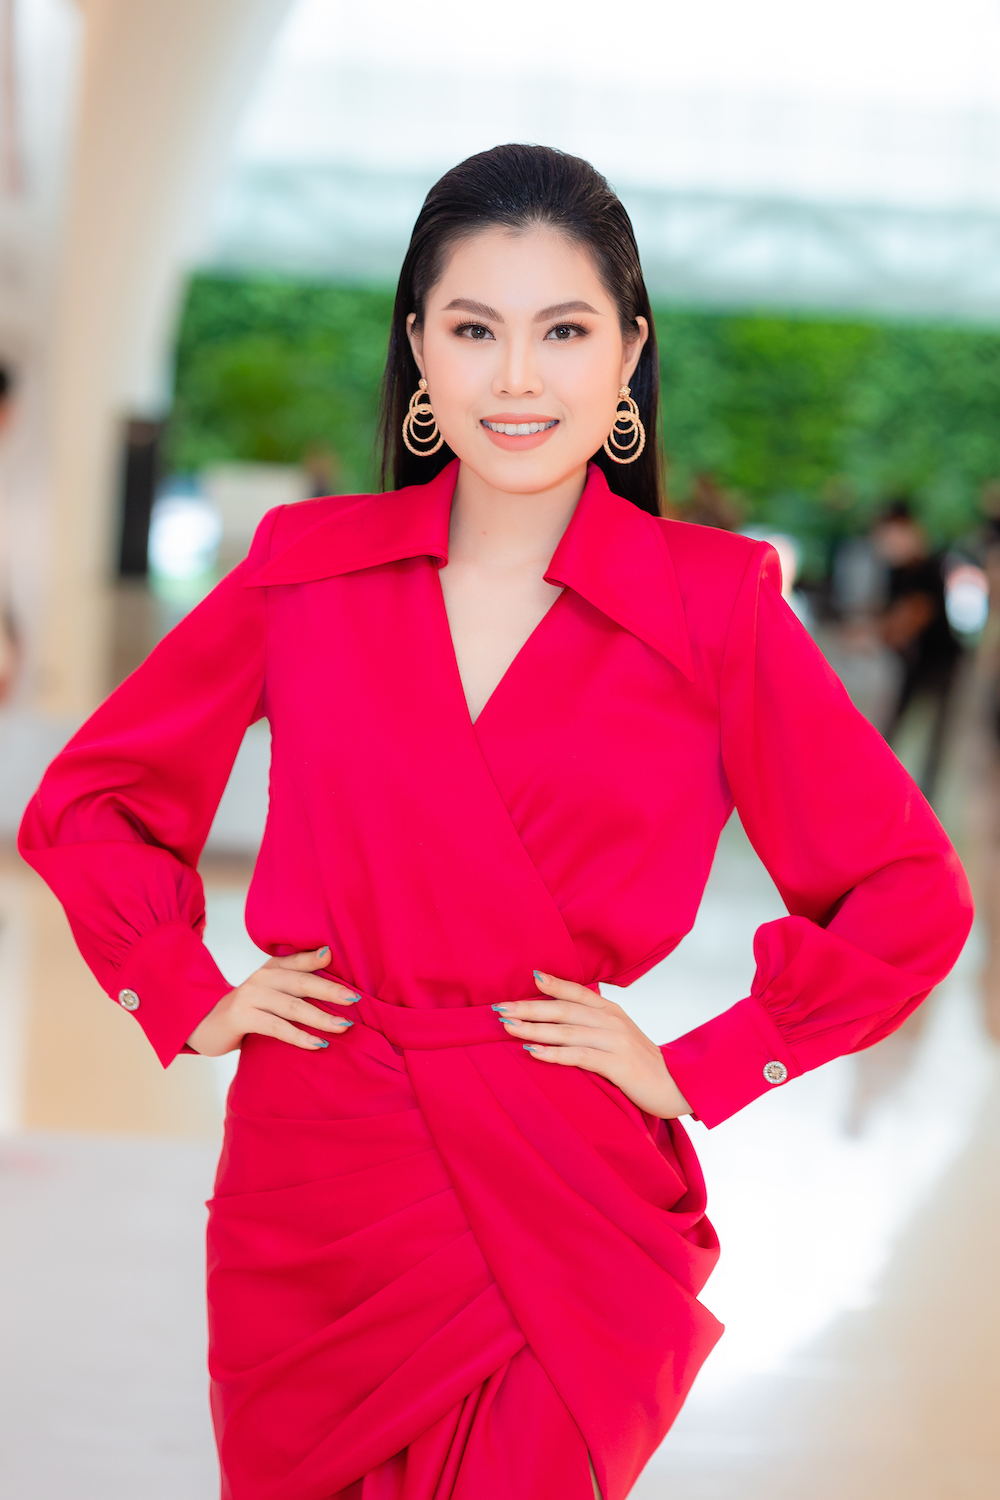 Hoa hau cac dan toc Viet Nam 5 - Profile ấn tượng của top 30 thí sinh vòng Chung khảo phía Nam – Hoa hậu các Dân tộc Việt Nam